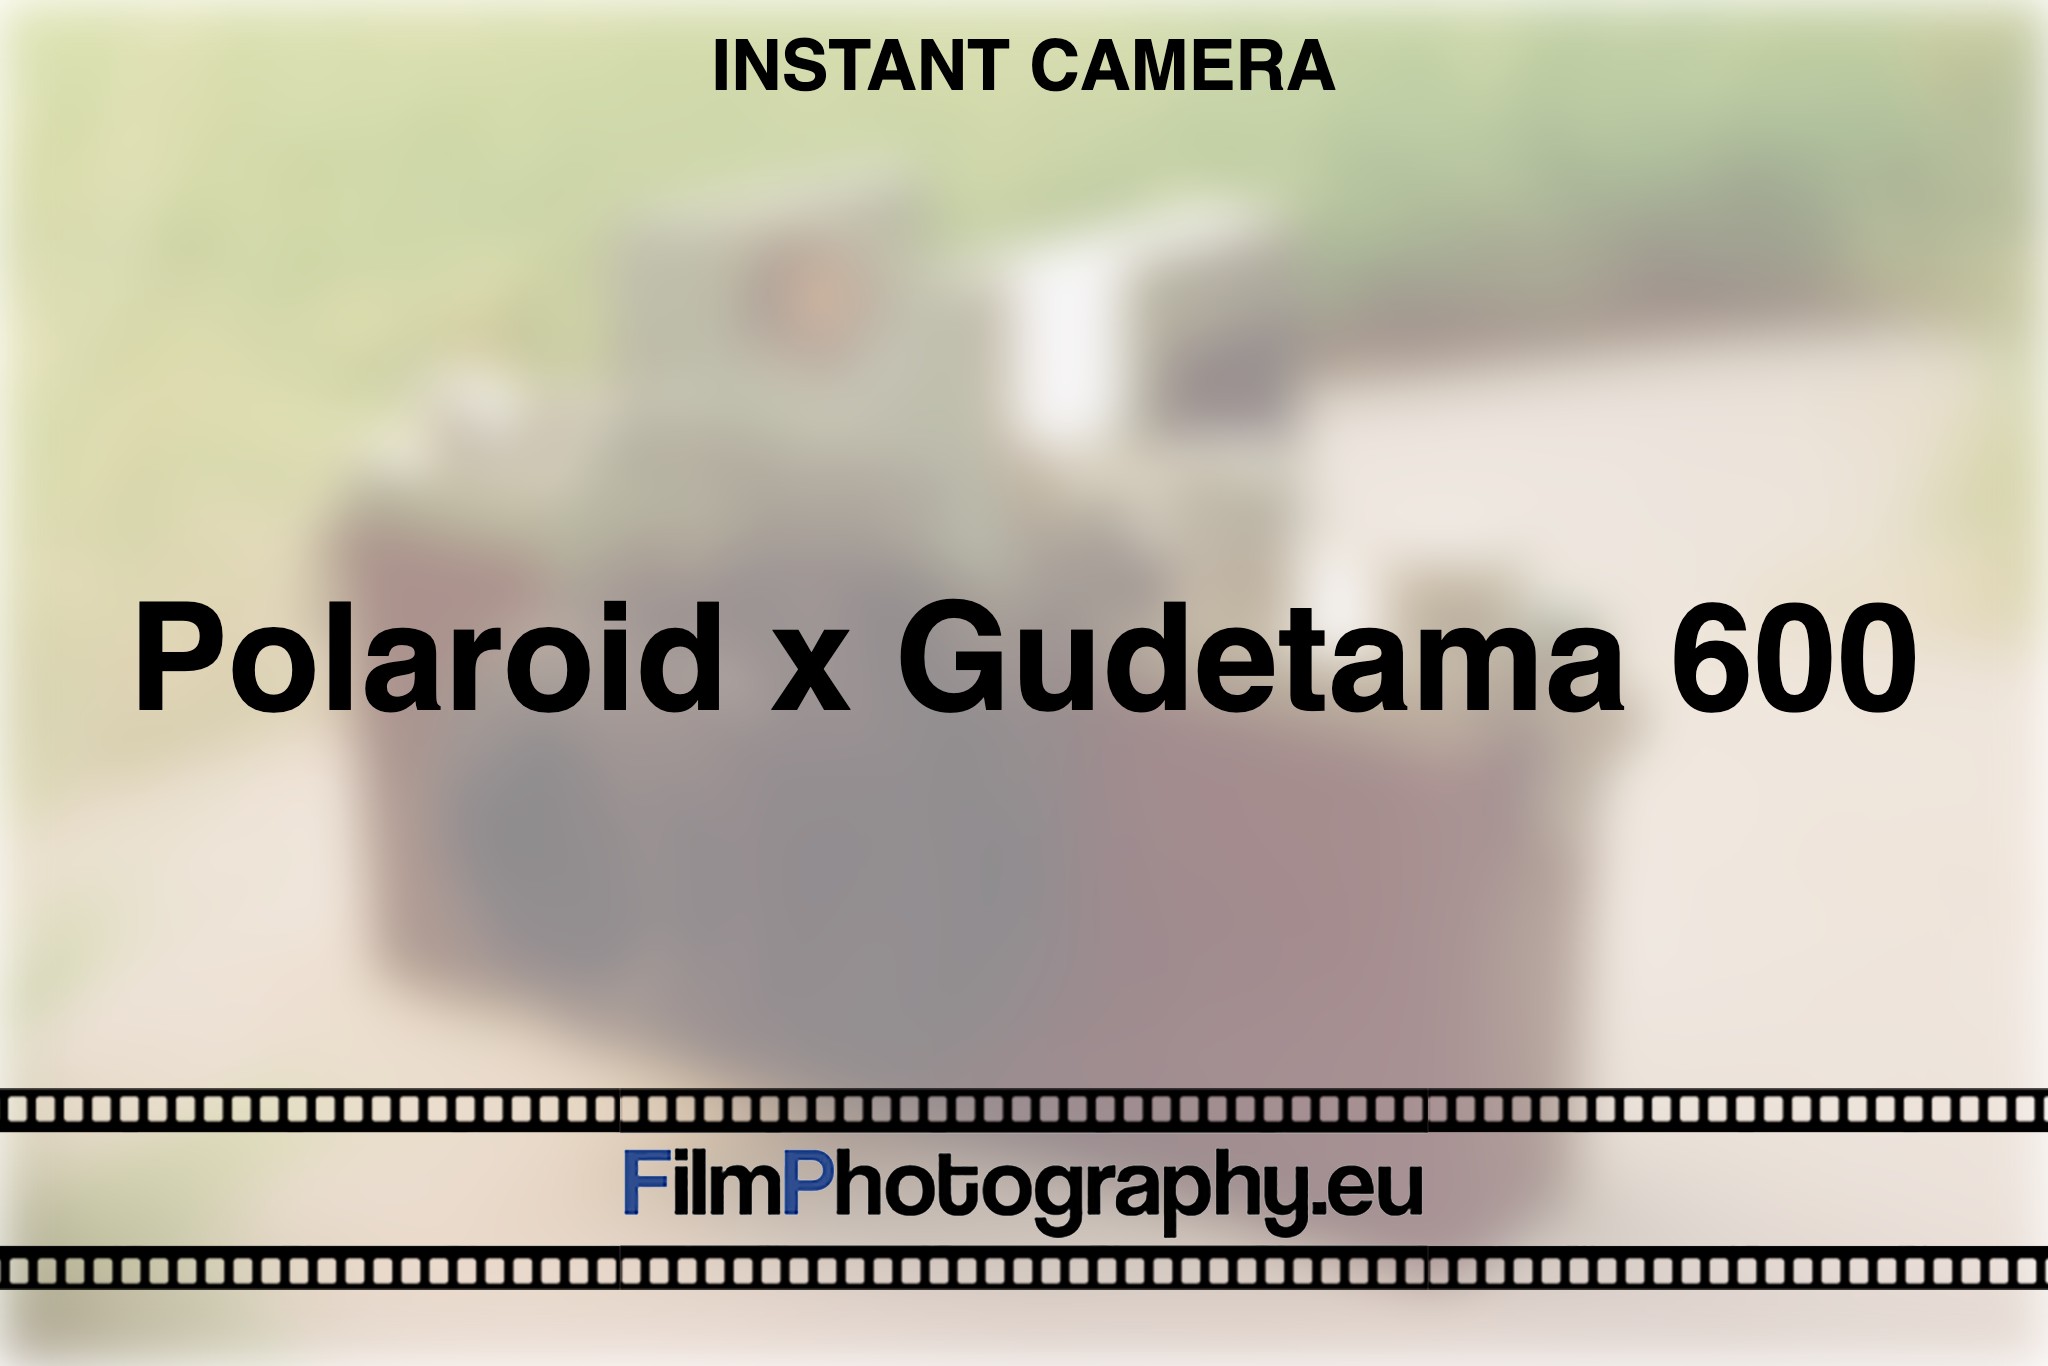 polaroid-x-gudetama-600-instant-camera-bnv